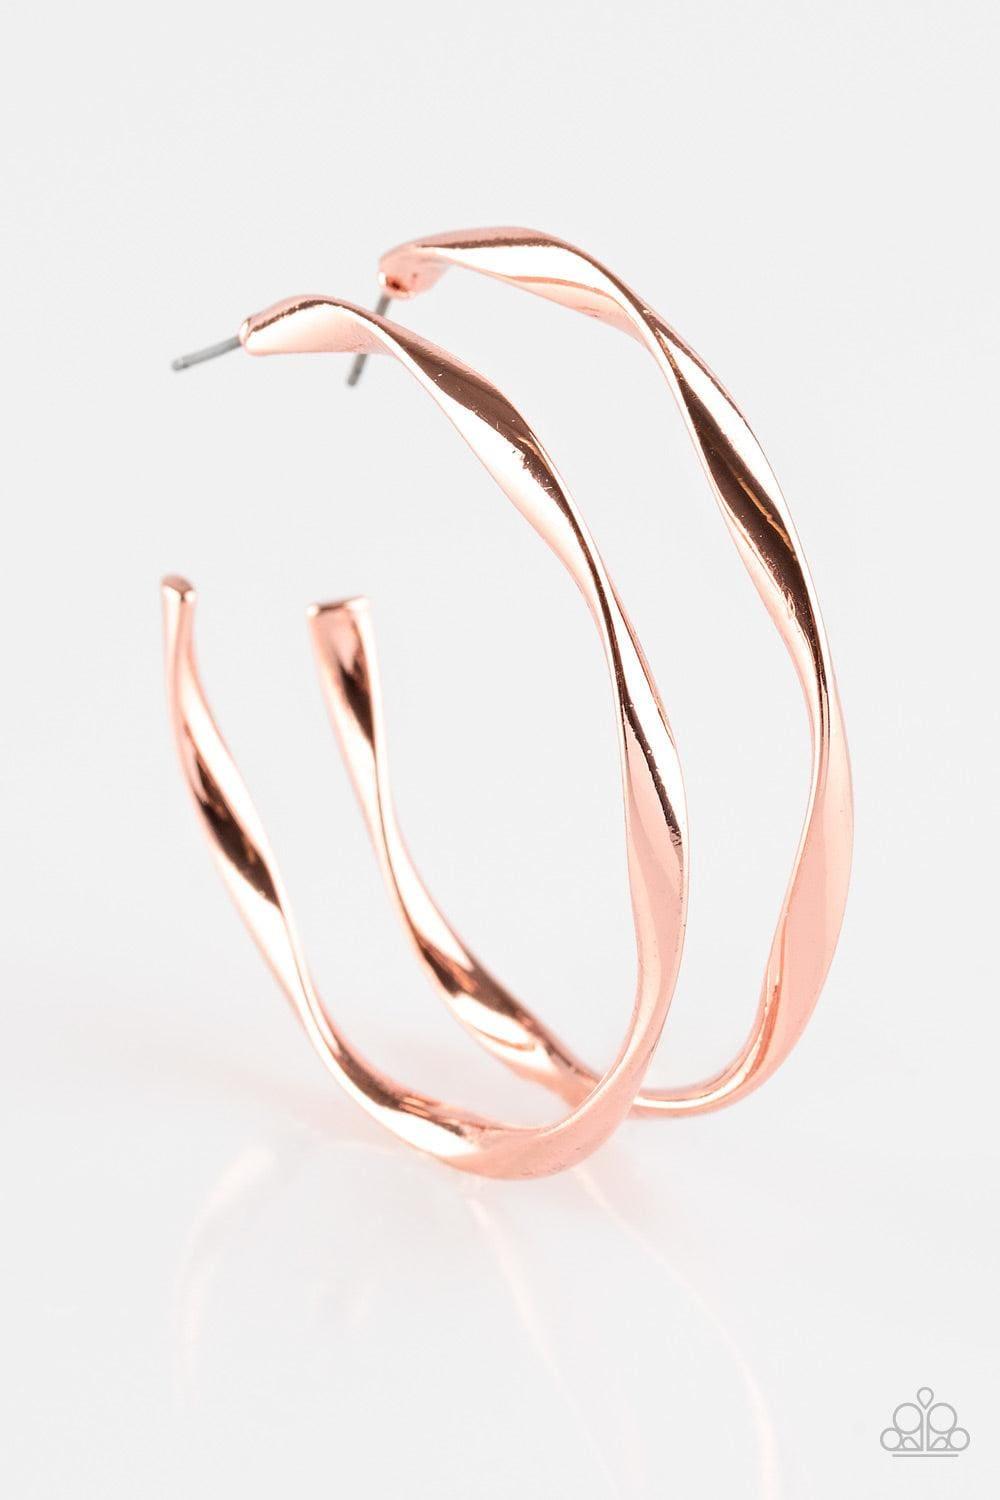 Paparazzi Accessories - Plot Twist - Copper Hoop Earrings - Bling by JessieK